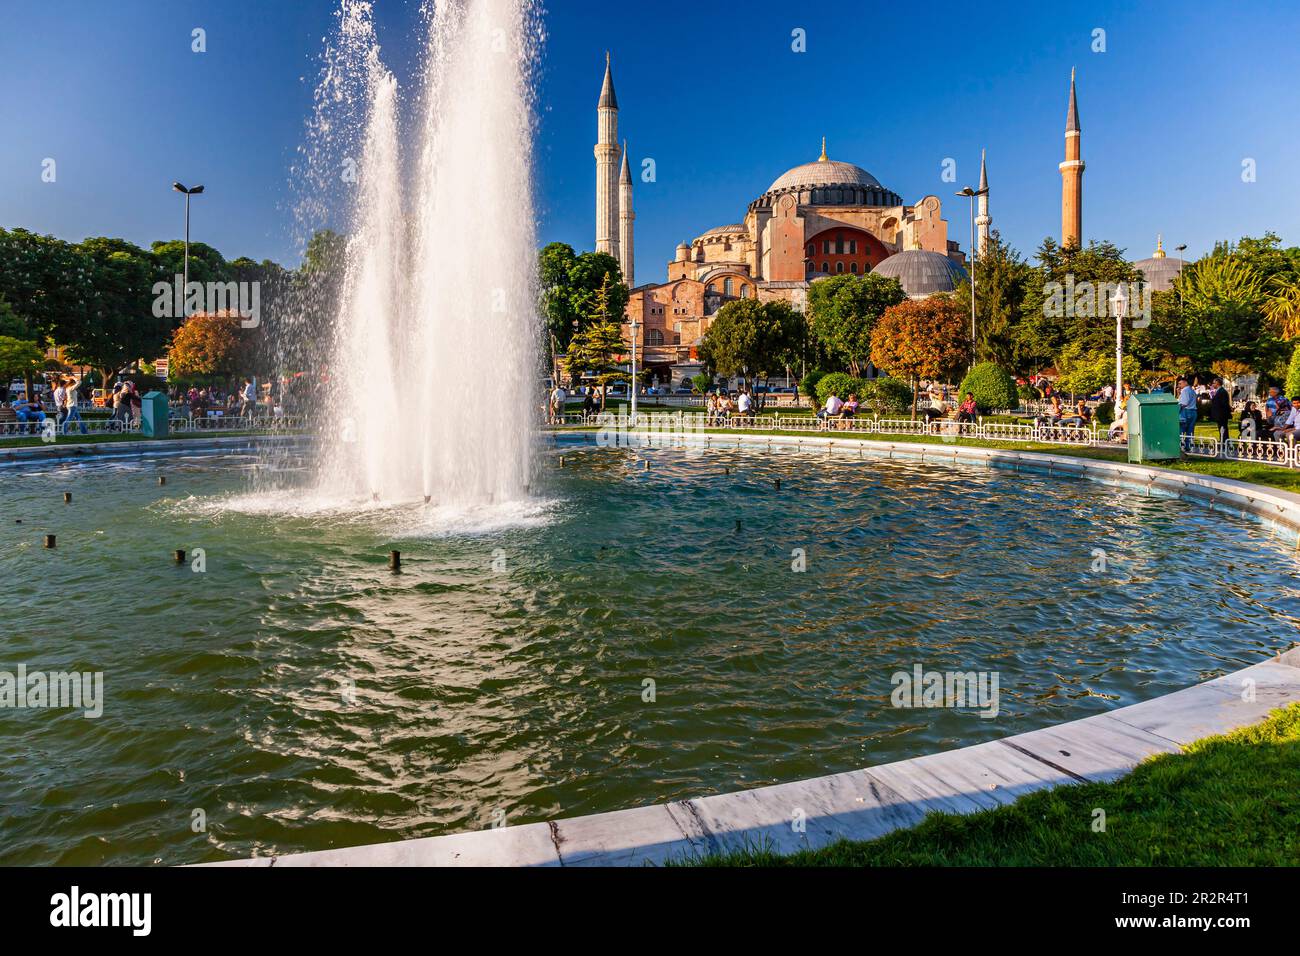 Sainte-Sophie (Aya sofia), Parc du Sultan Ahmet, quartiers historiques d'Istanbul, place Sultanahmet, Istanbul, Turquie Banque D'Images